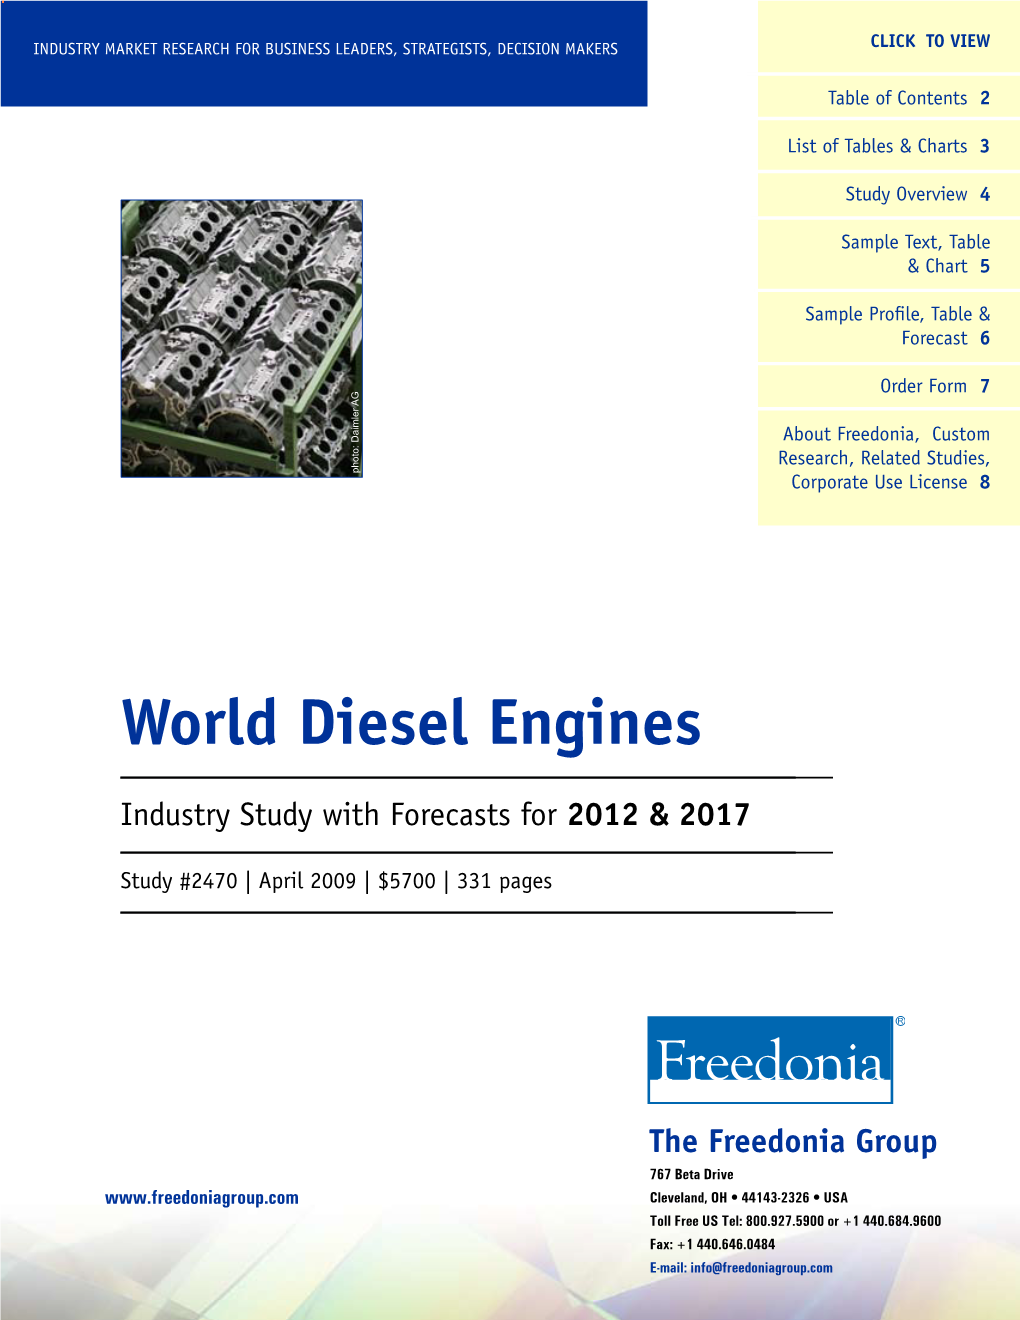 World Diesel Engines